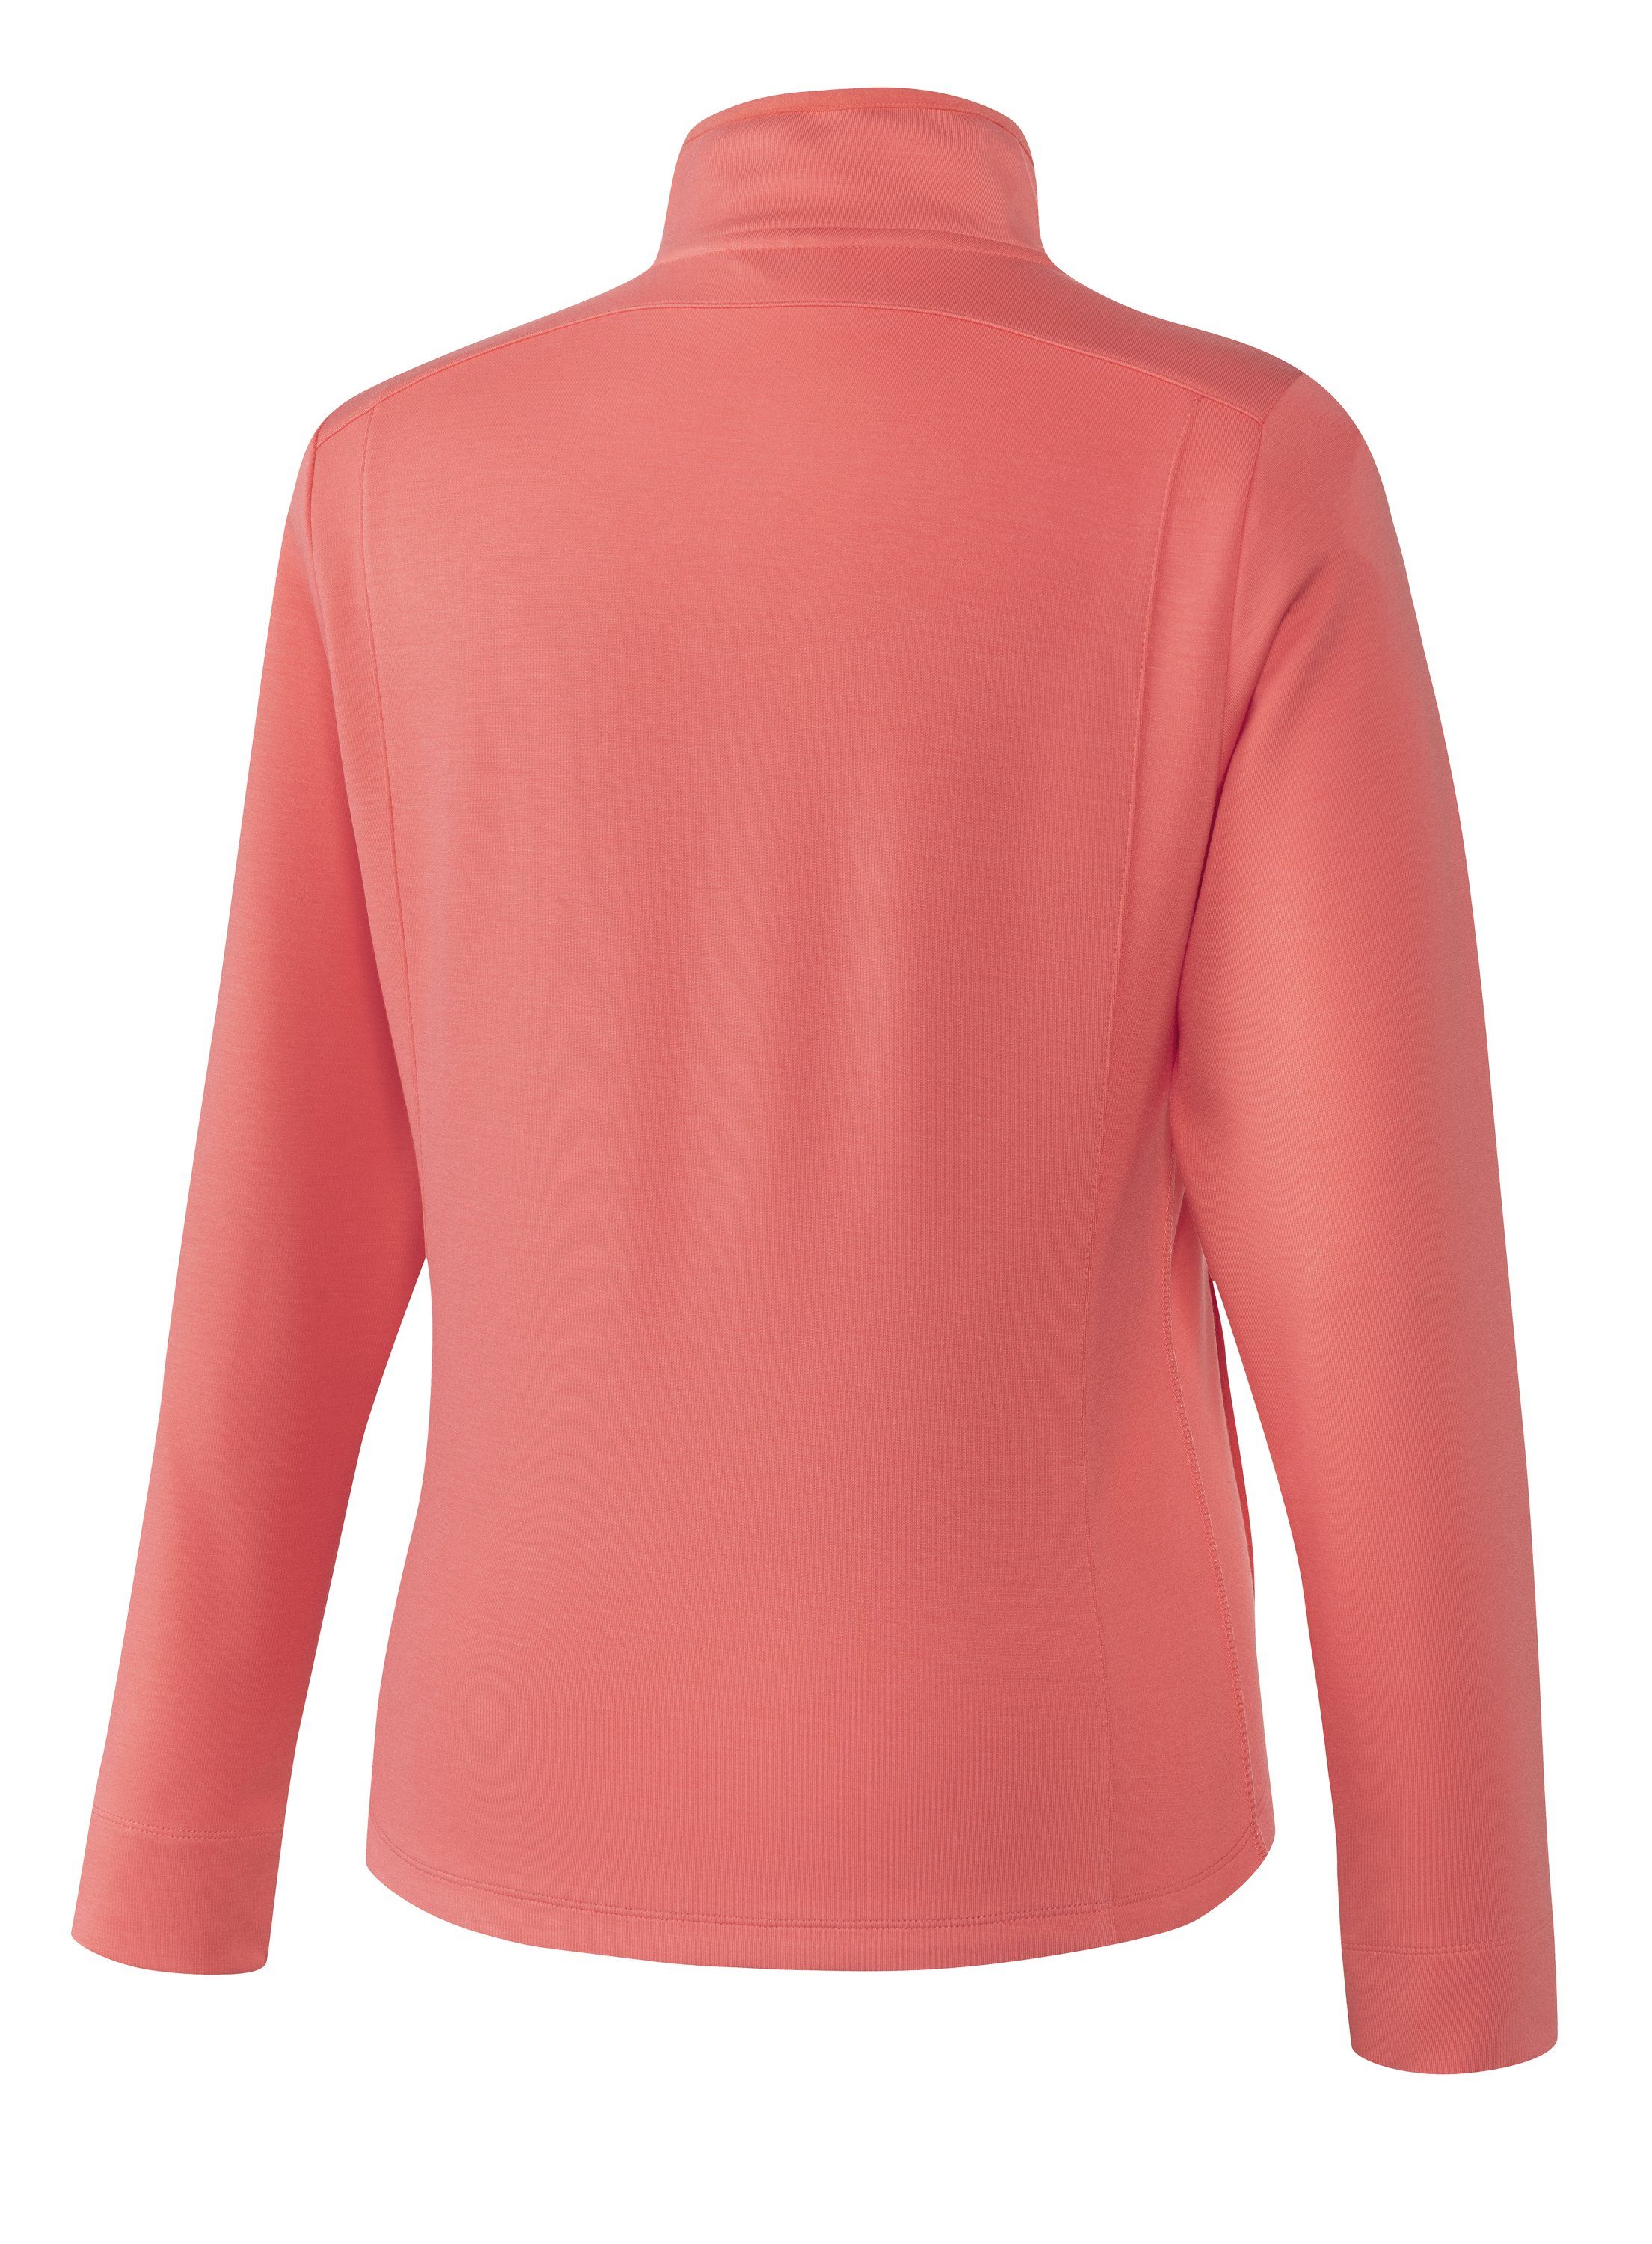 Joy Sportswear Trainingsjacke coral Jacke pink MALA